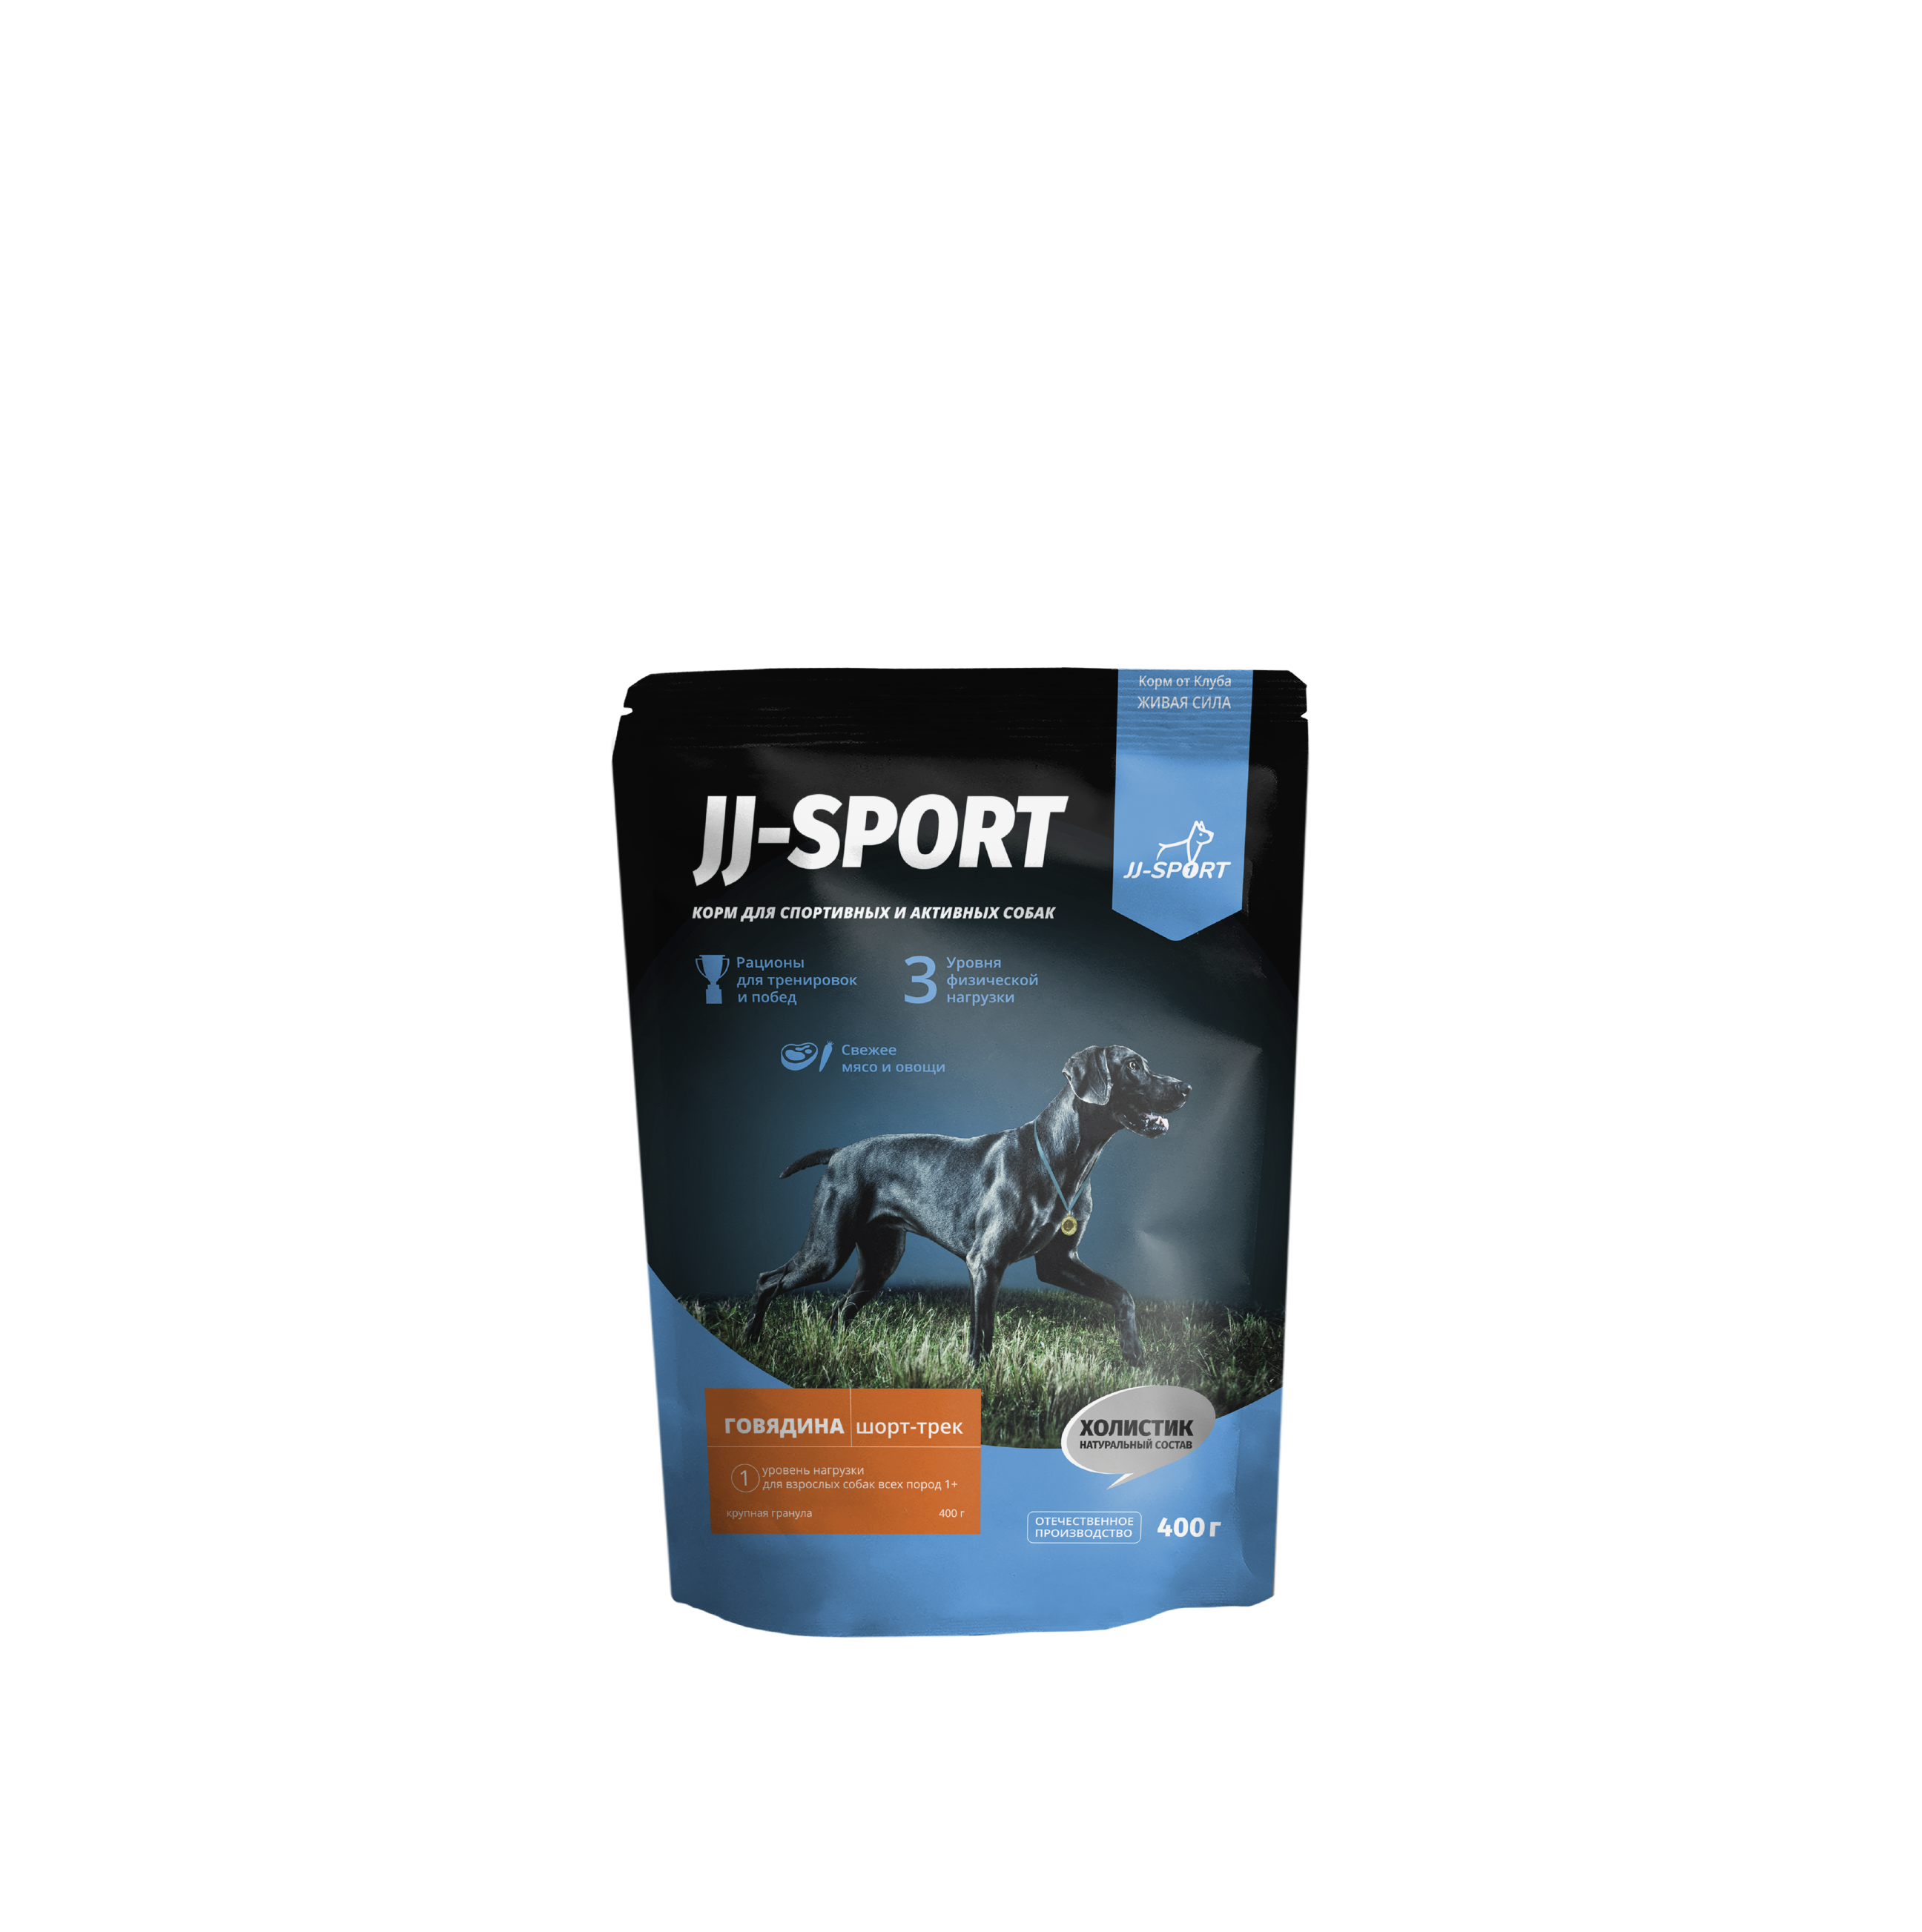 Сухой корм для собак JJ-SPORT Шорт-трек Живая Сила, крупная гранула, с говядиной, 0,4 кг